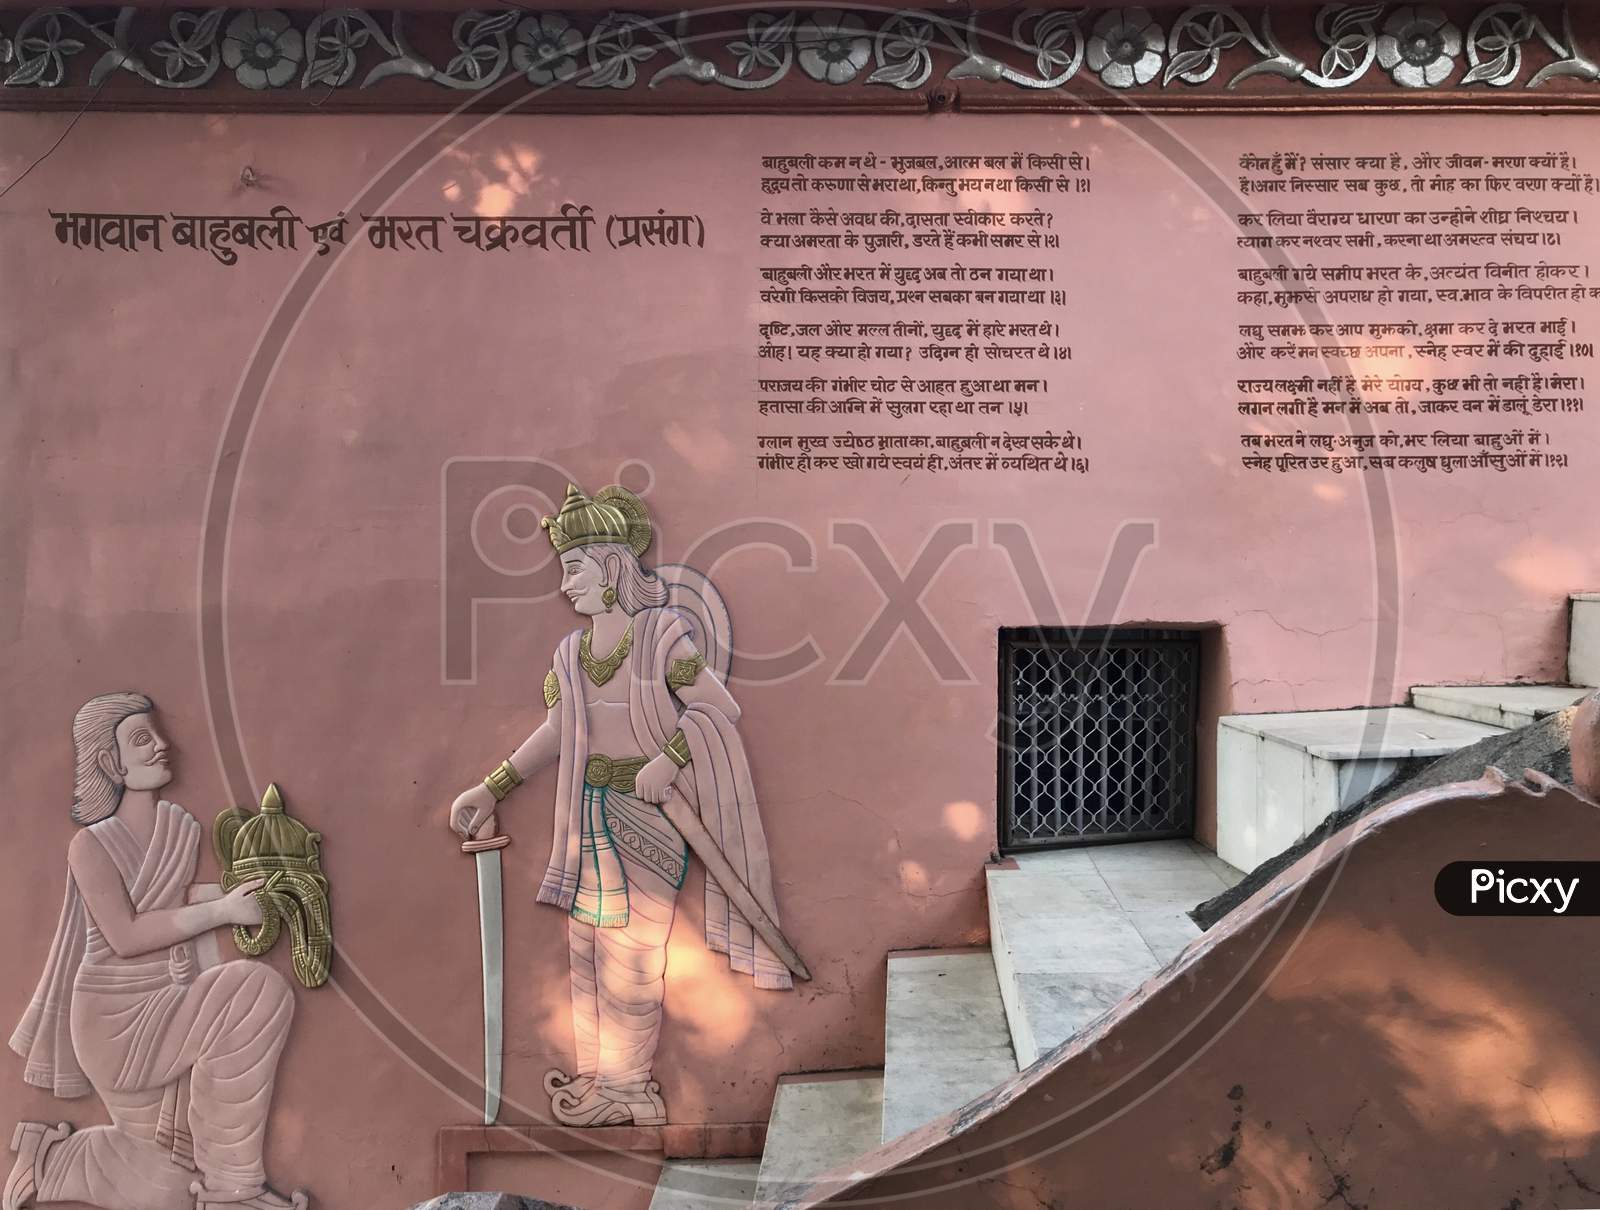 Jabalpur, Madhya Pradesh/India : Lord Bahubali and Bharat Chakravarti Prasang or Context at Pisanhari Ki Madhiya, Jabalpur